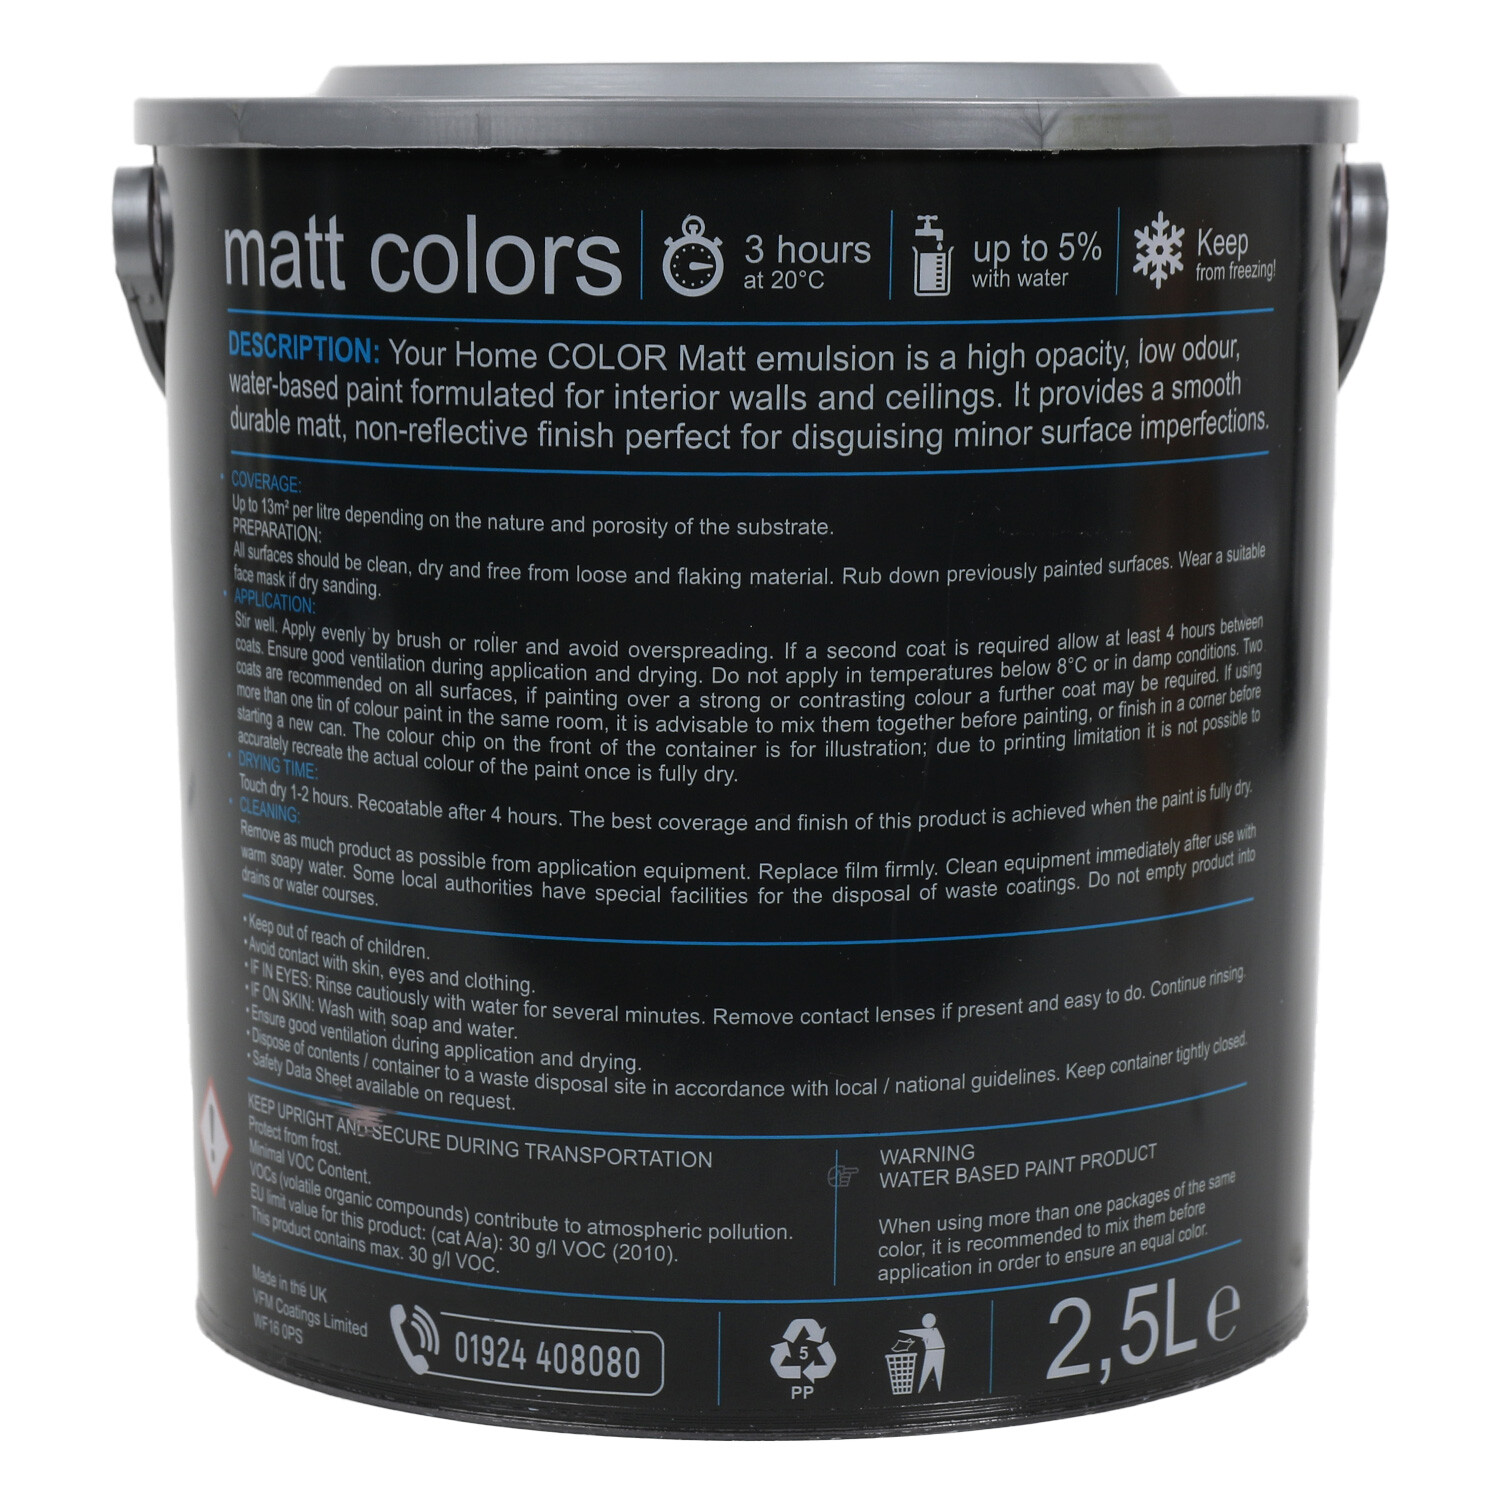 Your Home Walls & Ceilings Dusky Rose Matt Emulsion Paint 2.5L Image 2